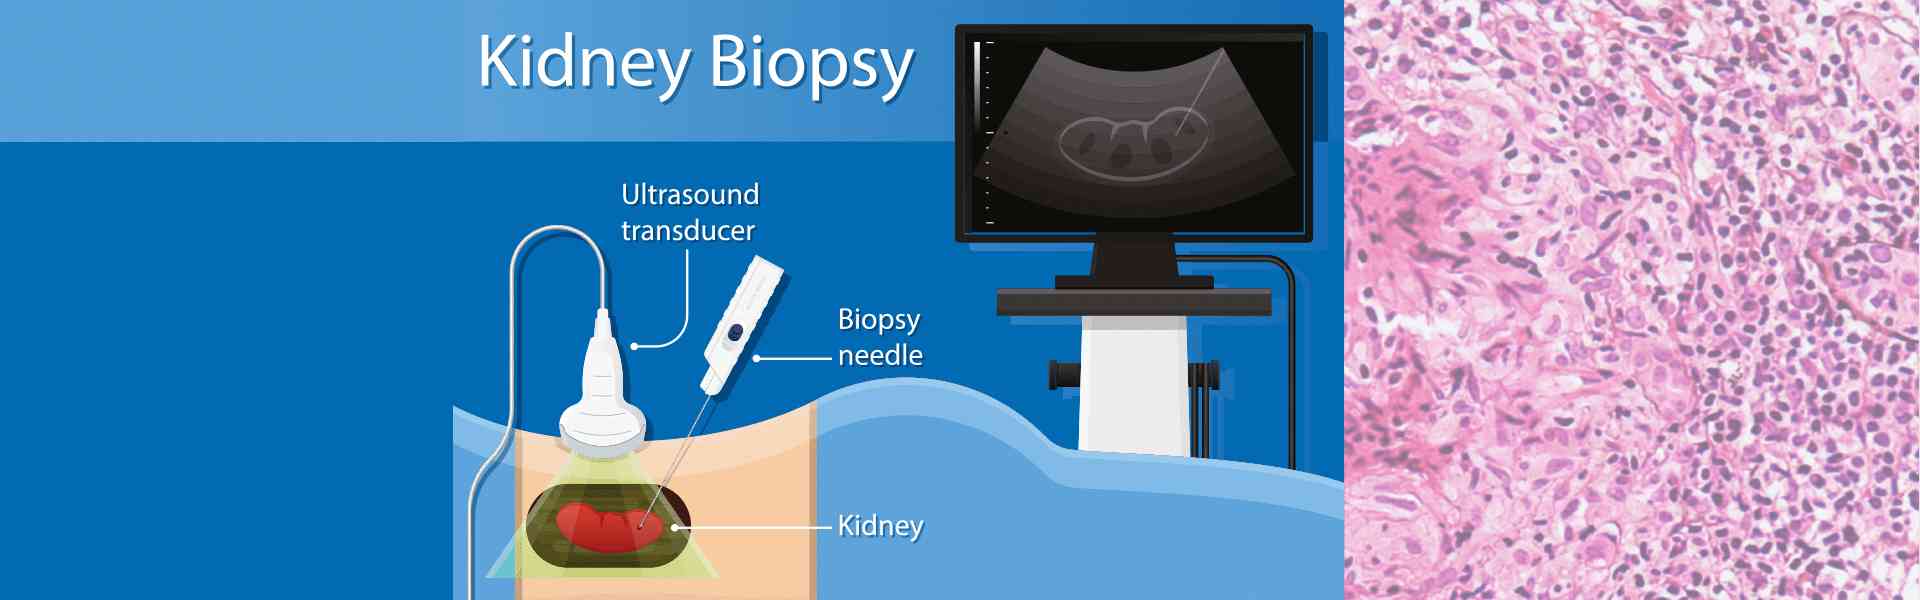 Kidney biopsy treatment in Patiala